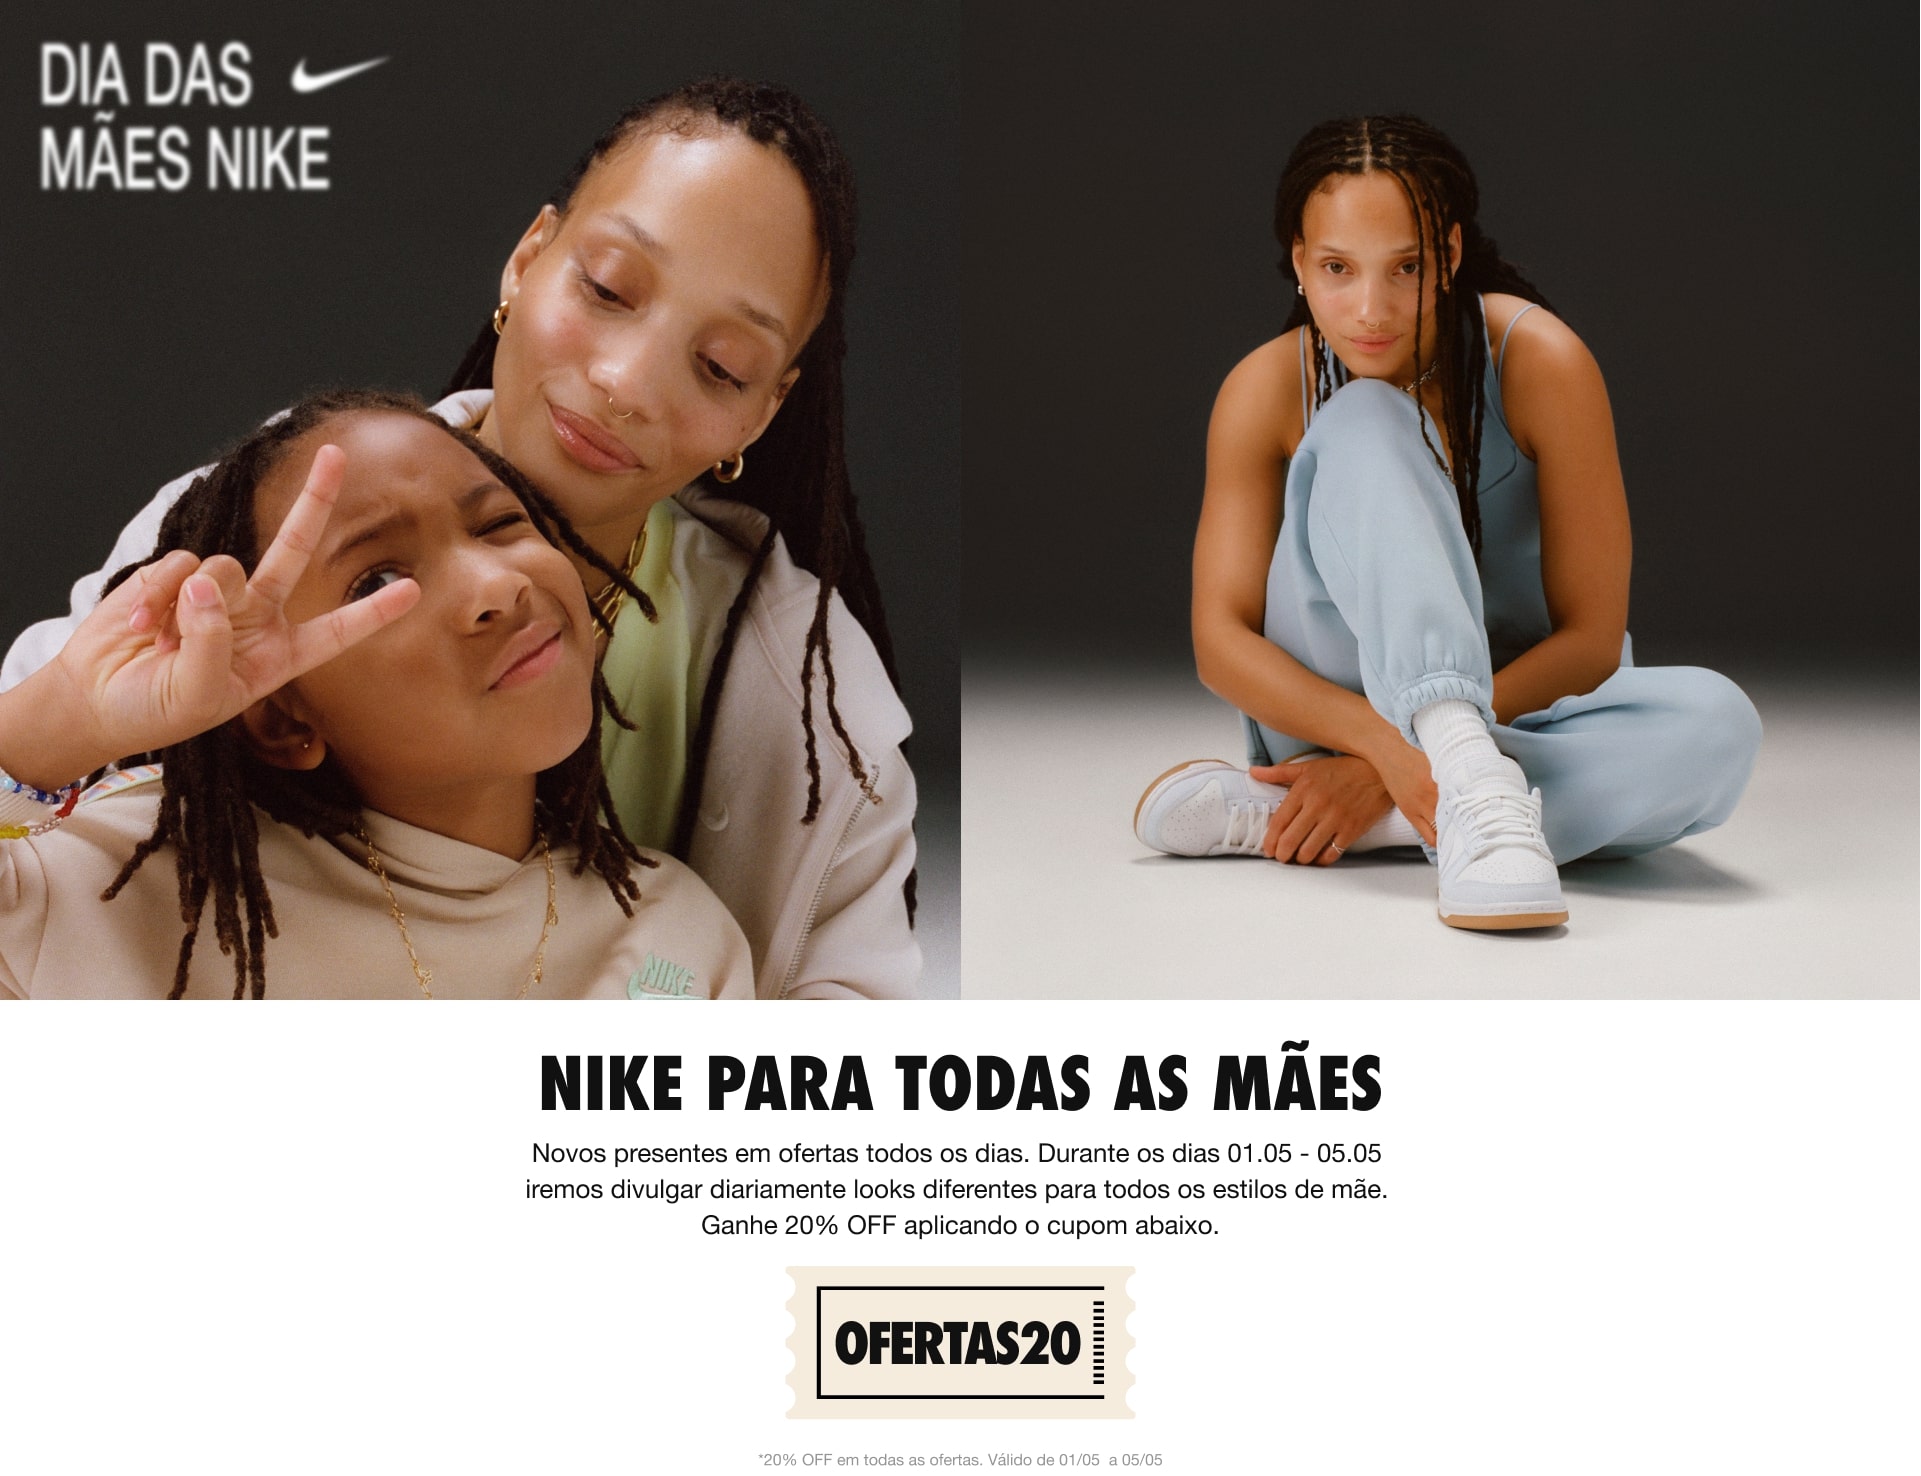 Dias das mães Nike